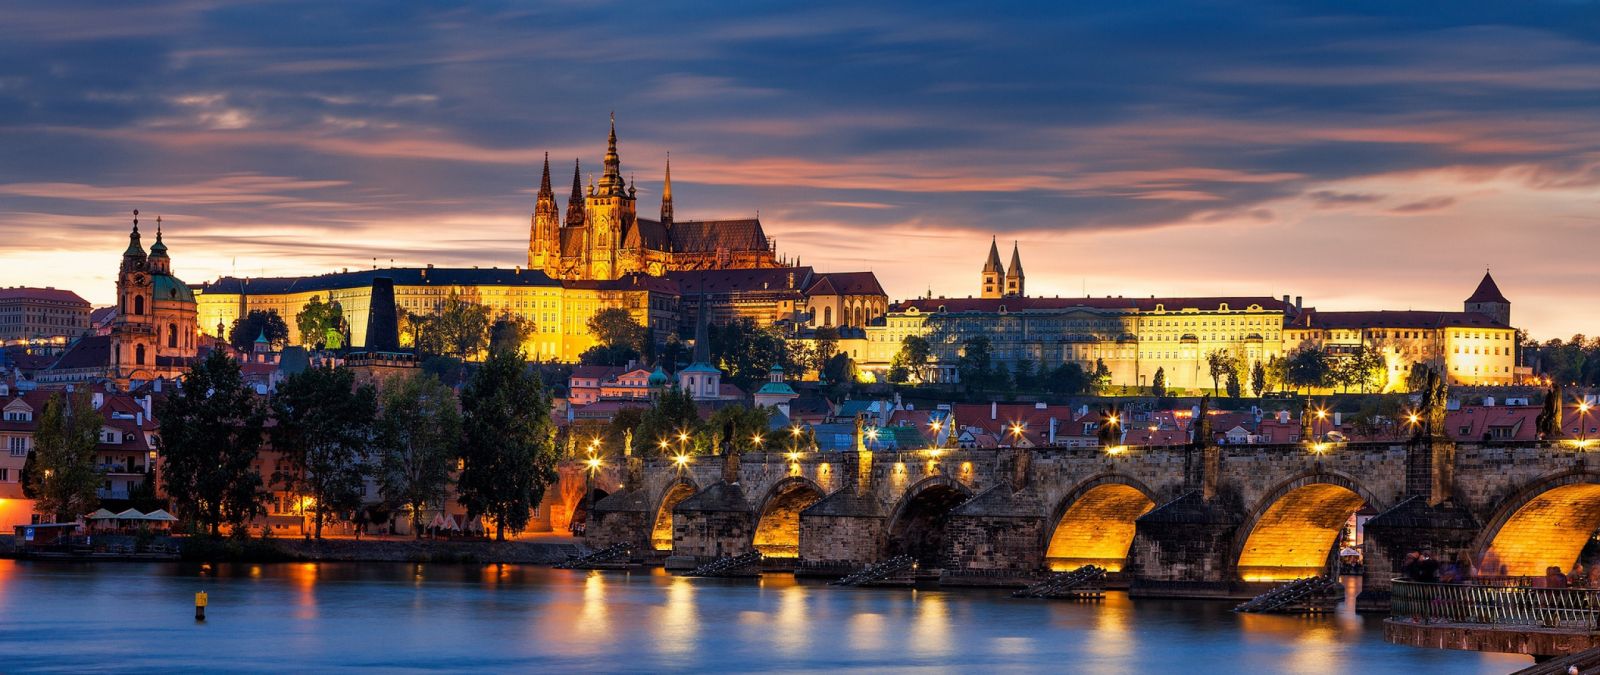 جمهوری چک | قیمت تور جمهوری چک | تور ارزان جمهوری چک | تور لحظه آخری